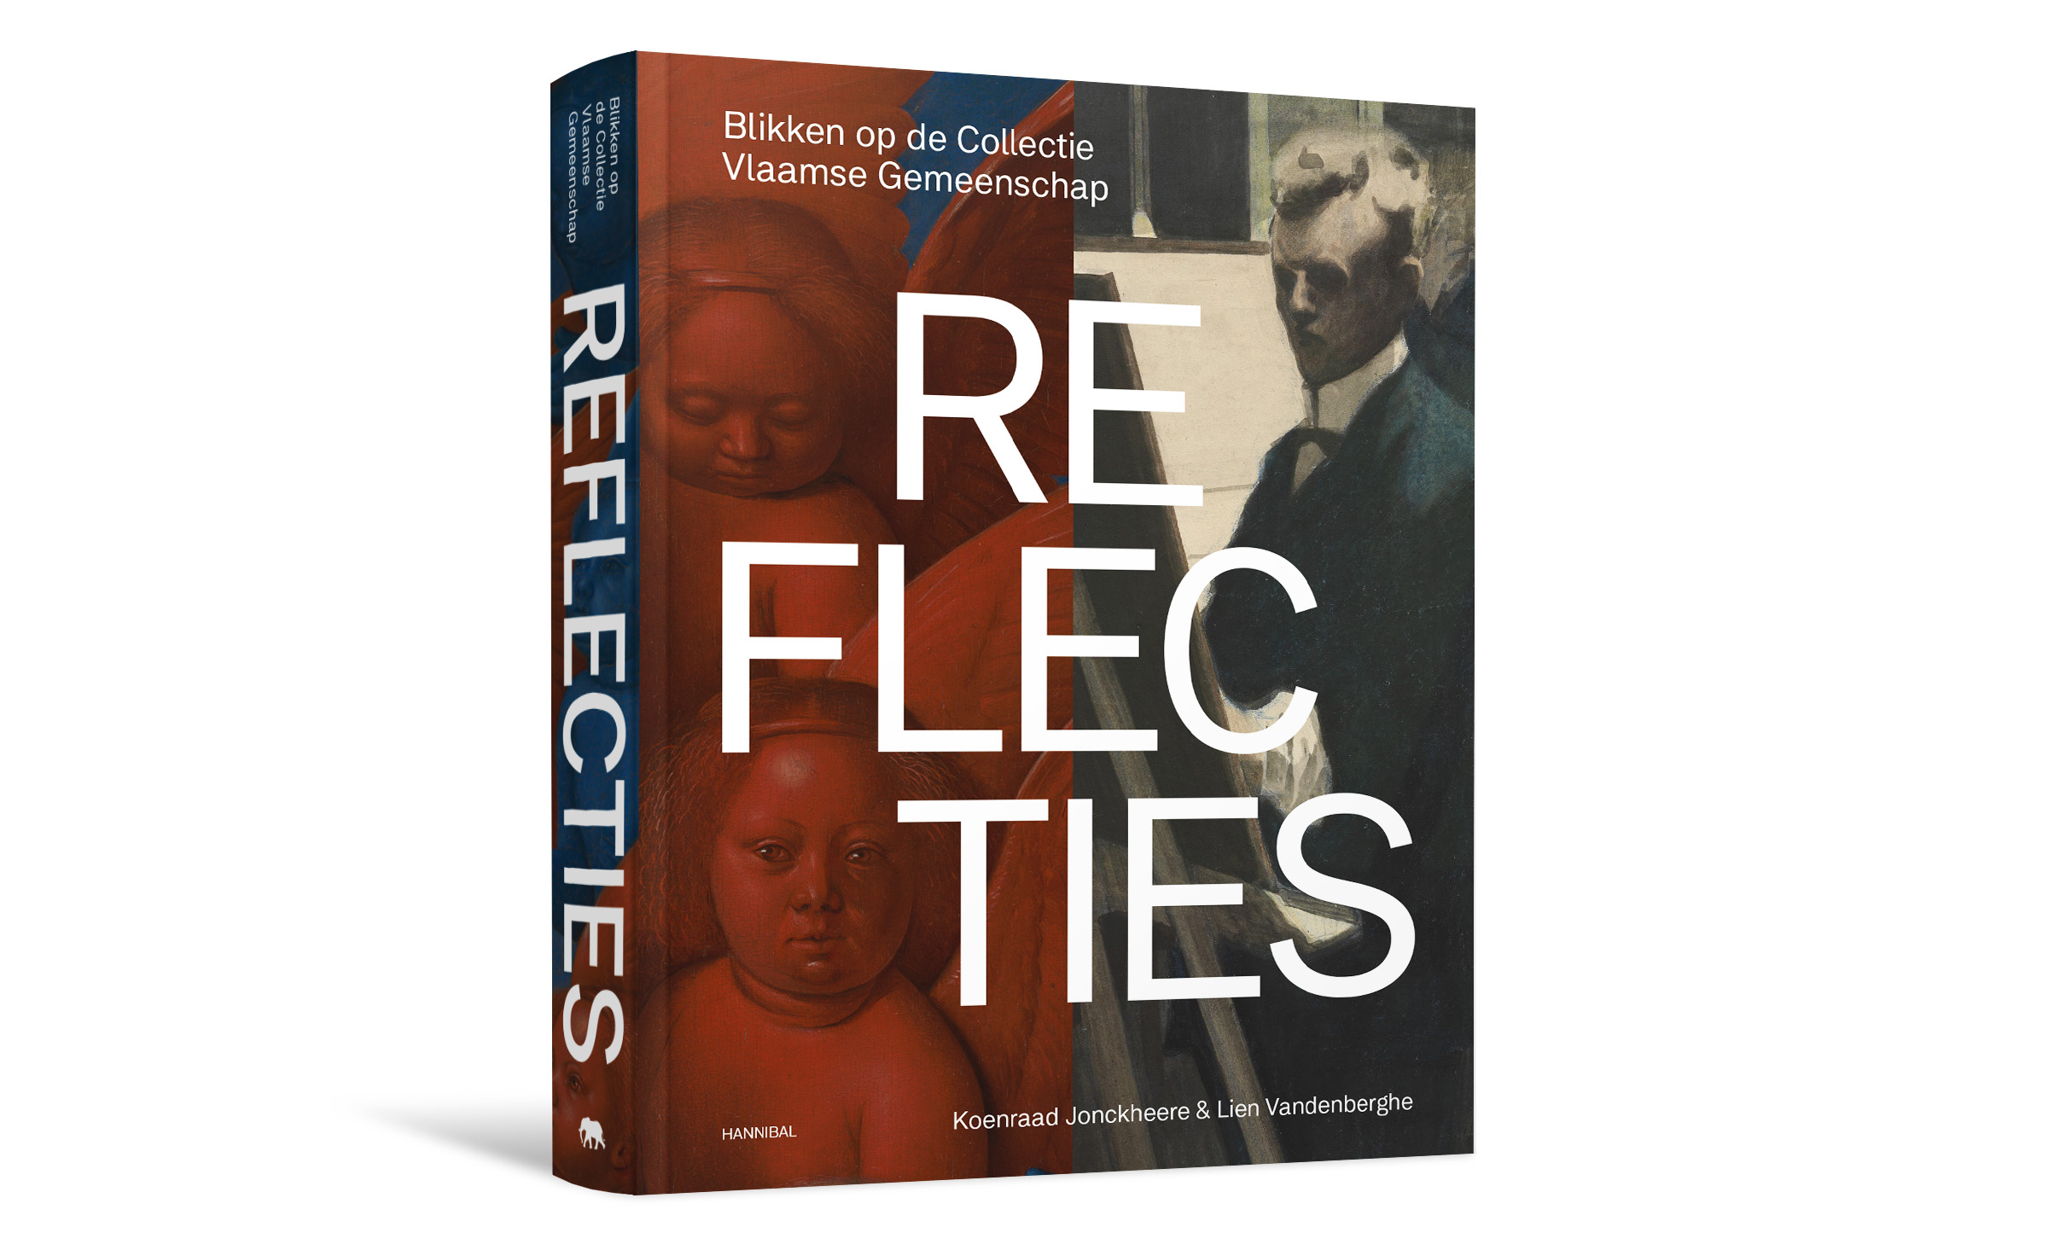 Reflecties - Blikken op de Collectie Vlaamse Gemeenschap